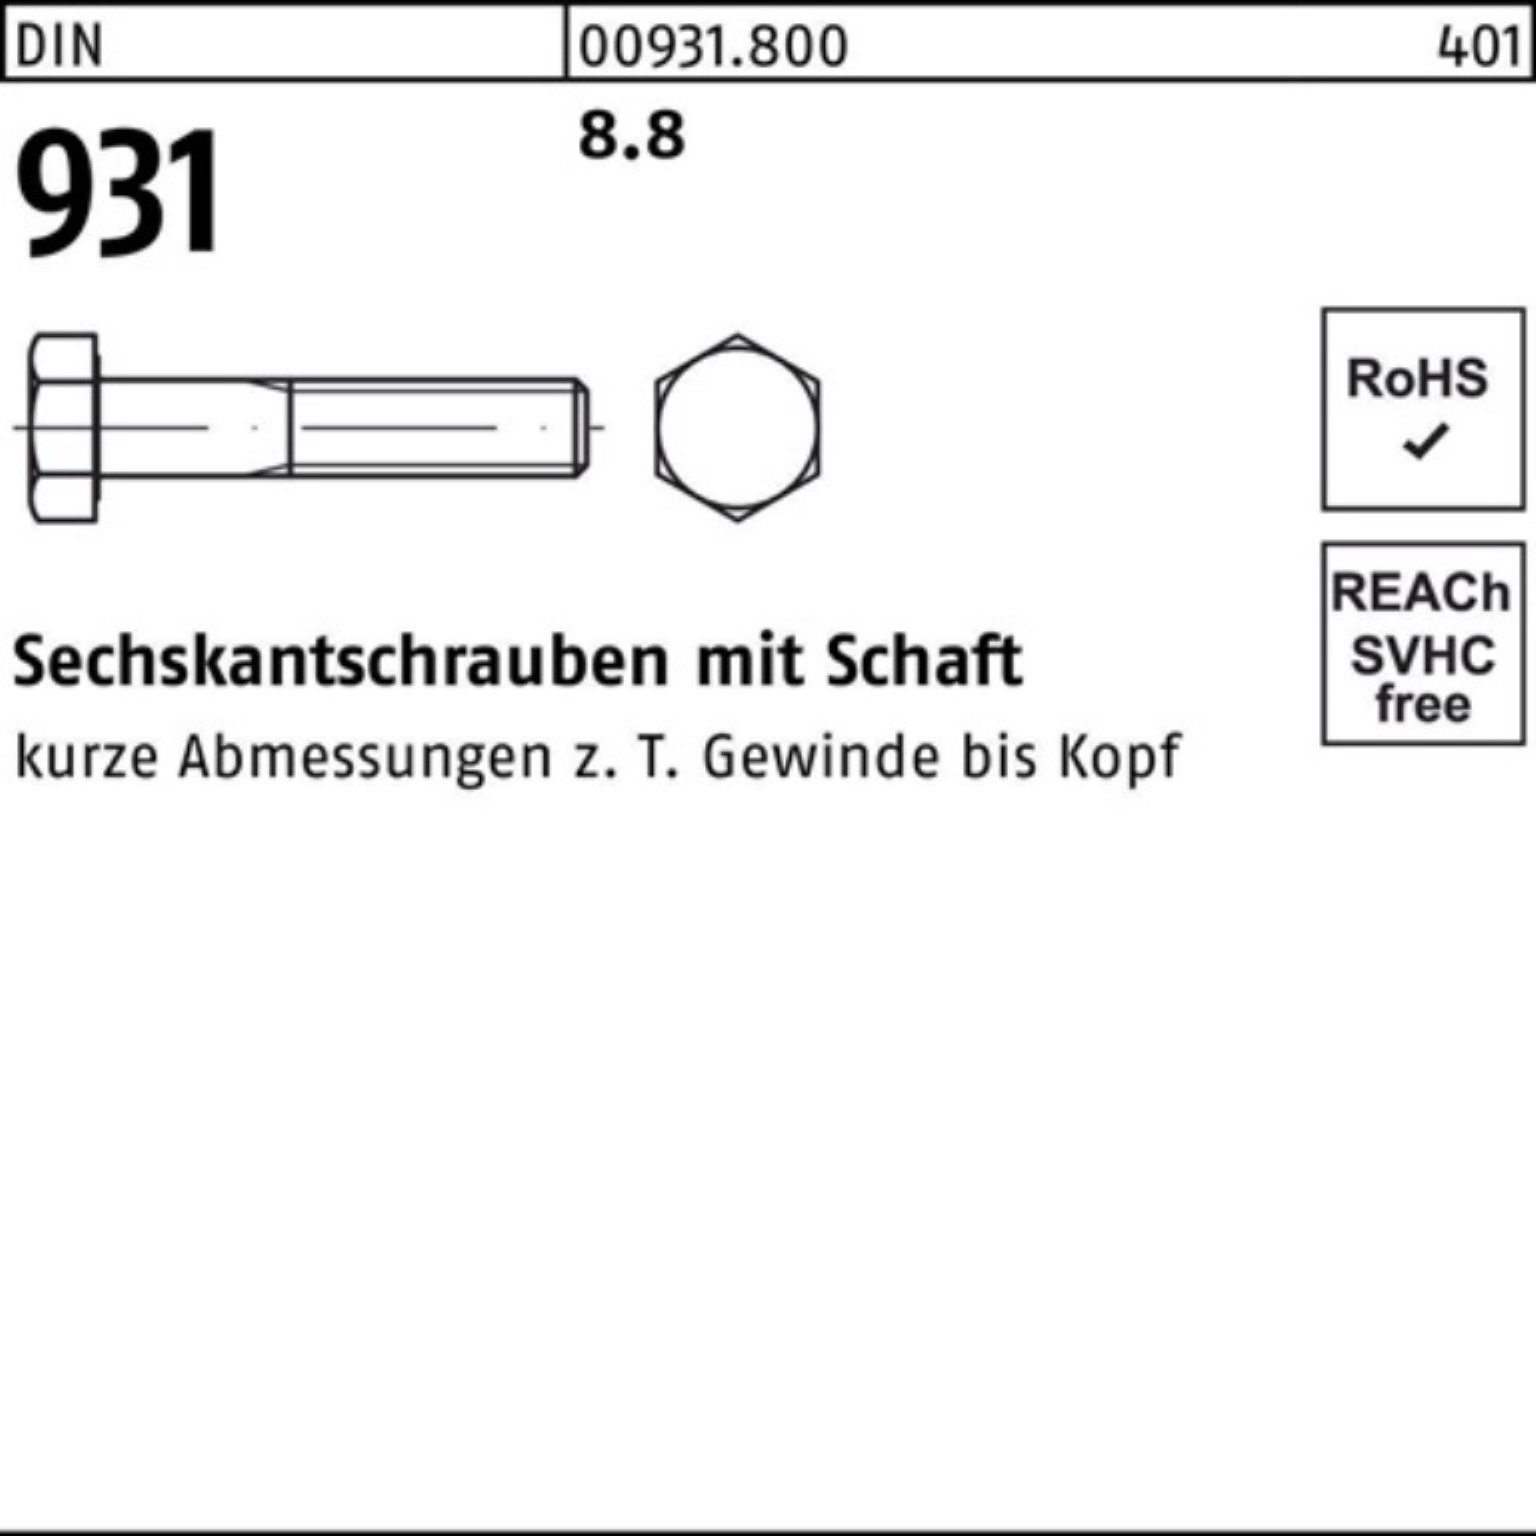 Reyher Sechskantschraube M27x DIN 8.8 100er 180 DIN Schaft Pack Stück 931 Sechskantschraube 1